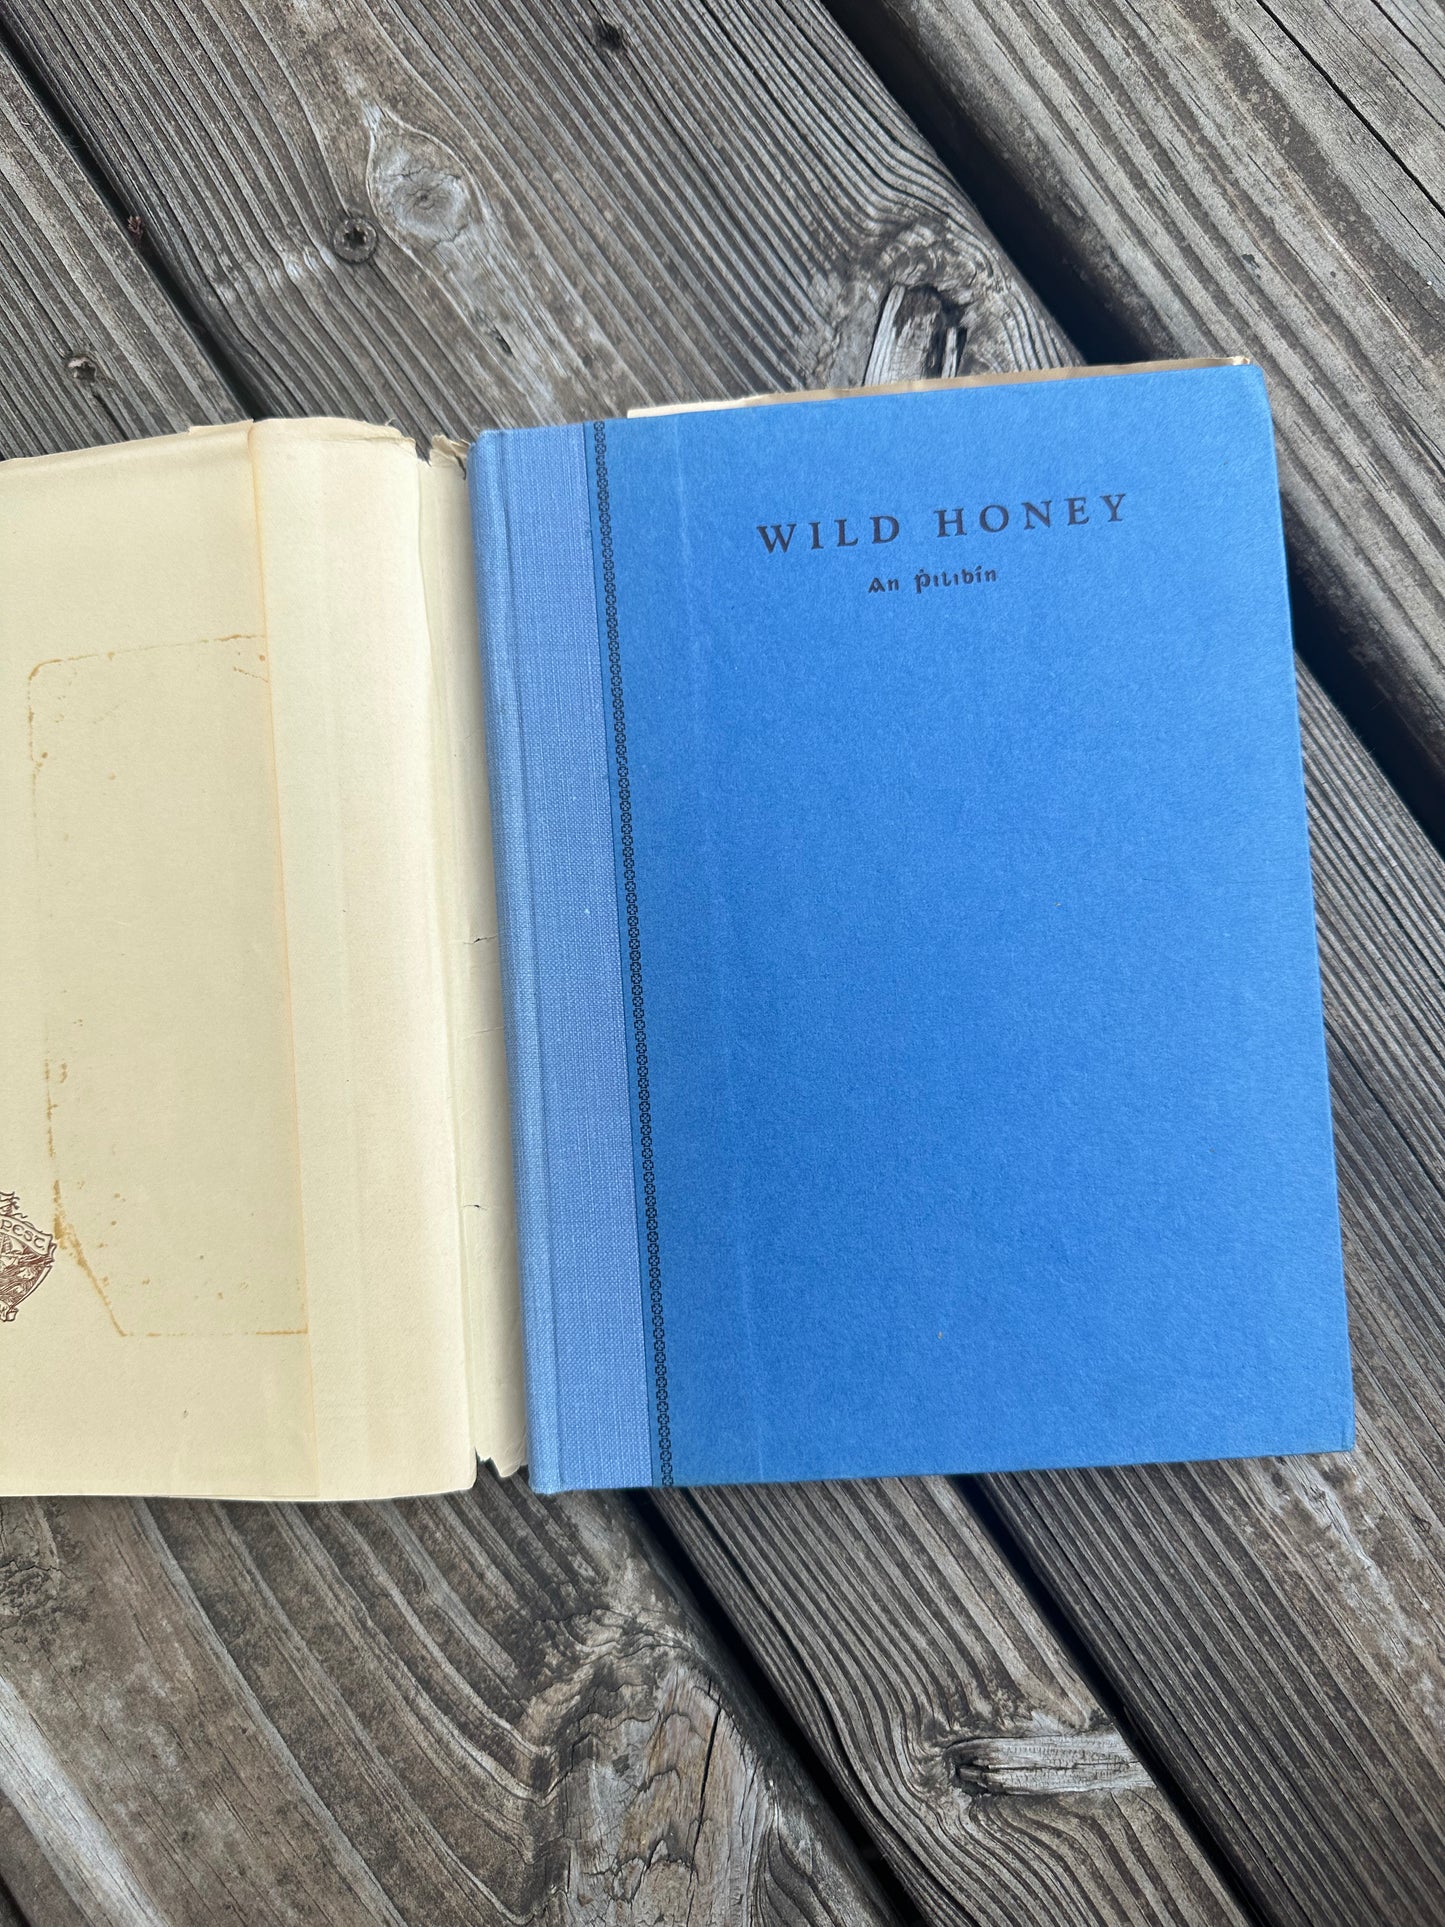 Wild Honey Poems